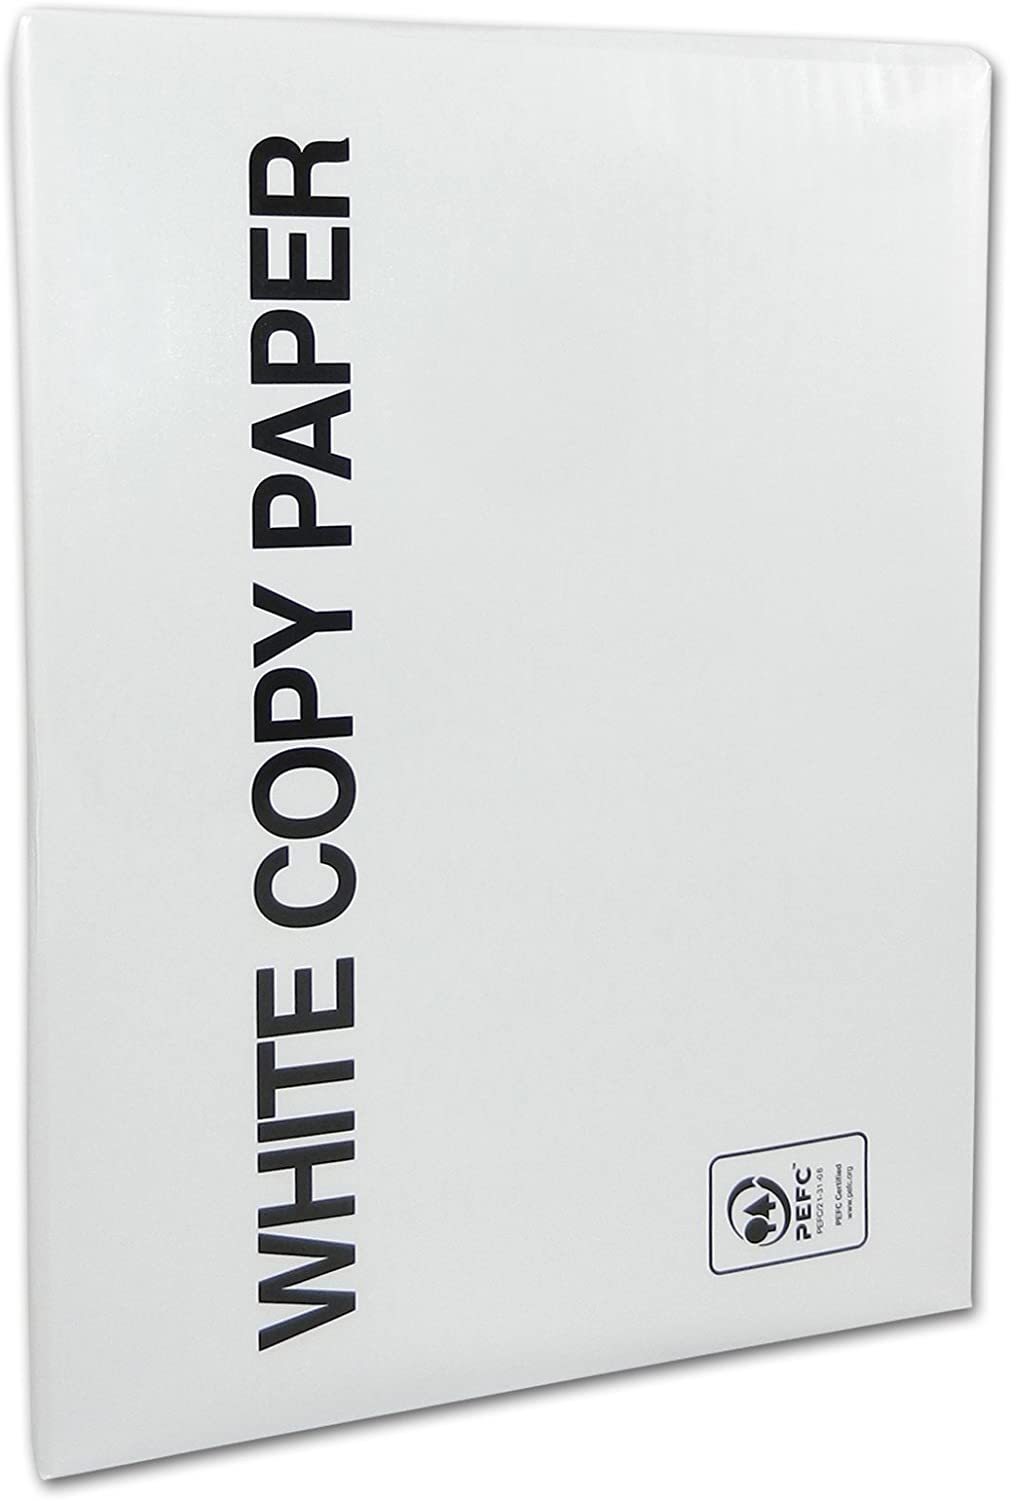 versando White Copy Paper, carta per stampante e fotocopiatrice, formato DIN A4, 75 g/m2, per stampanti laser e a getto d'inchiostro, colore bianco (02)weiß - 500 Blatt (01) bianco - 500 fogli